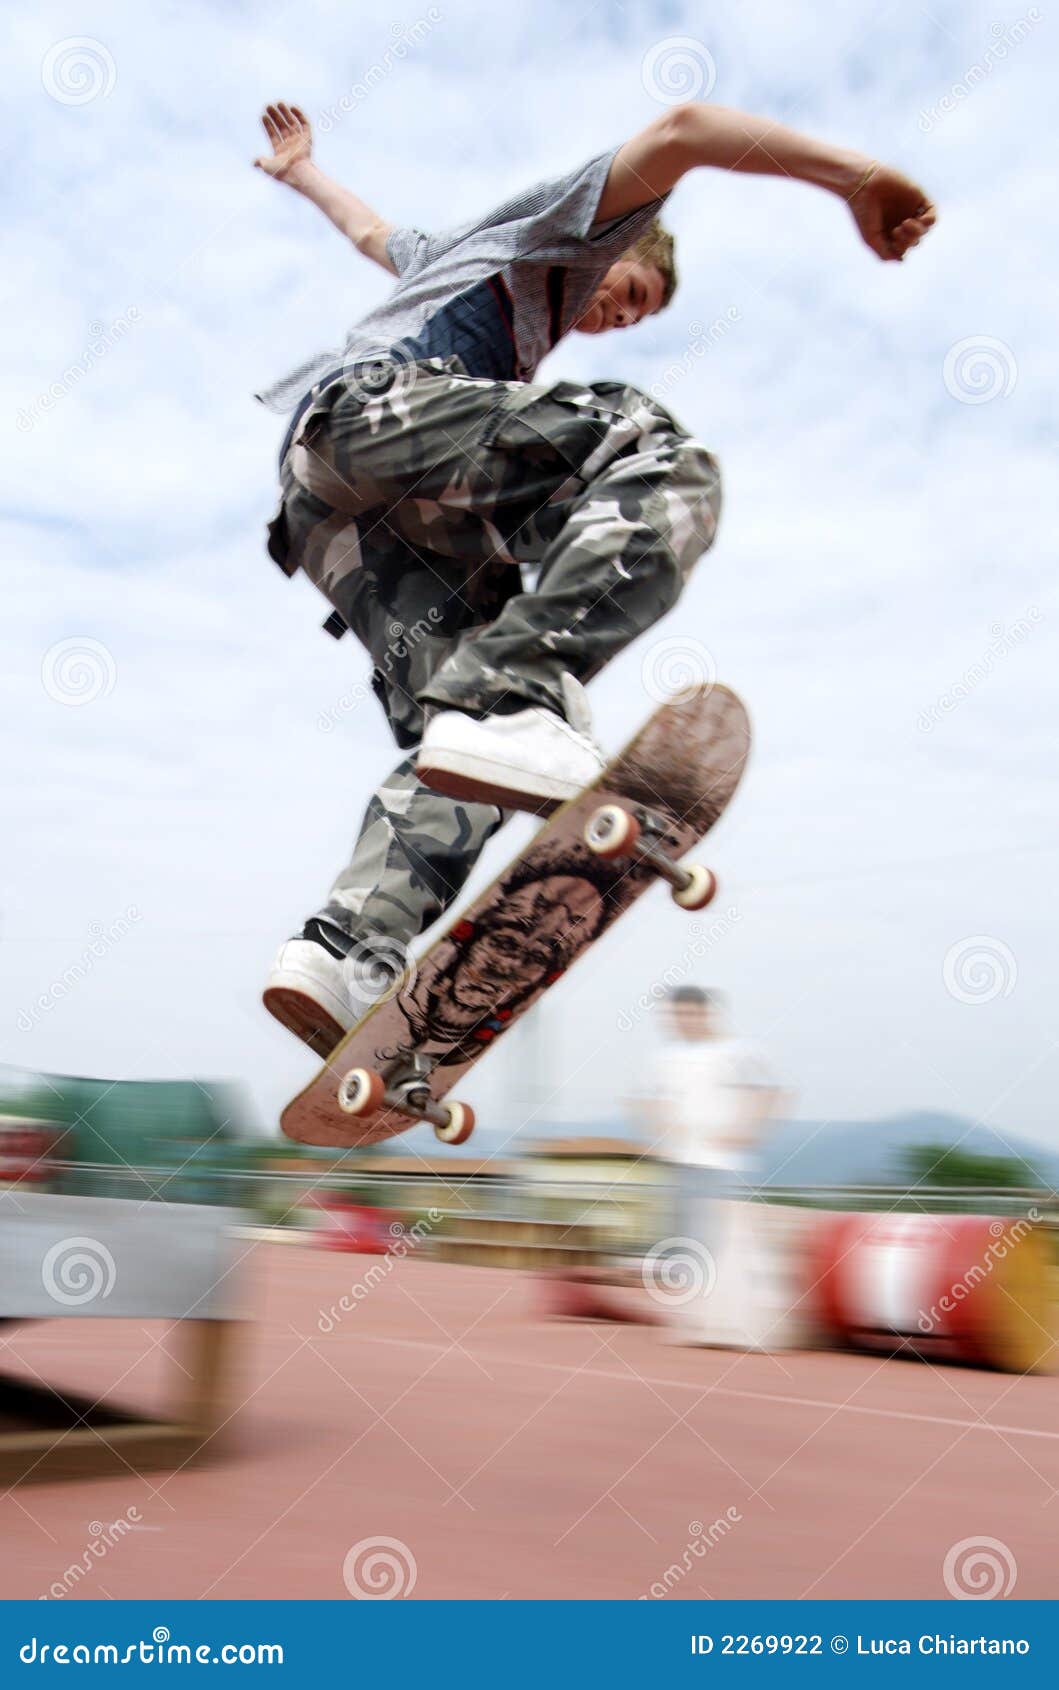 on Skate stock photo. Image of legs, skateboard 2269922